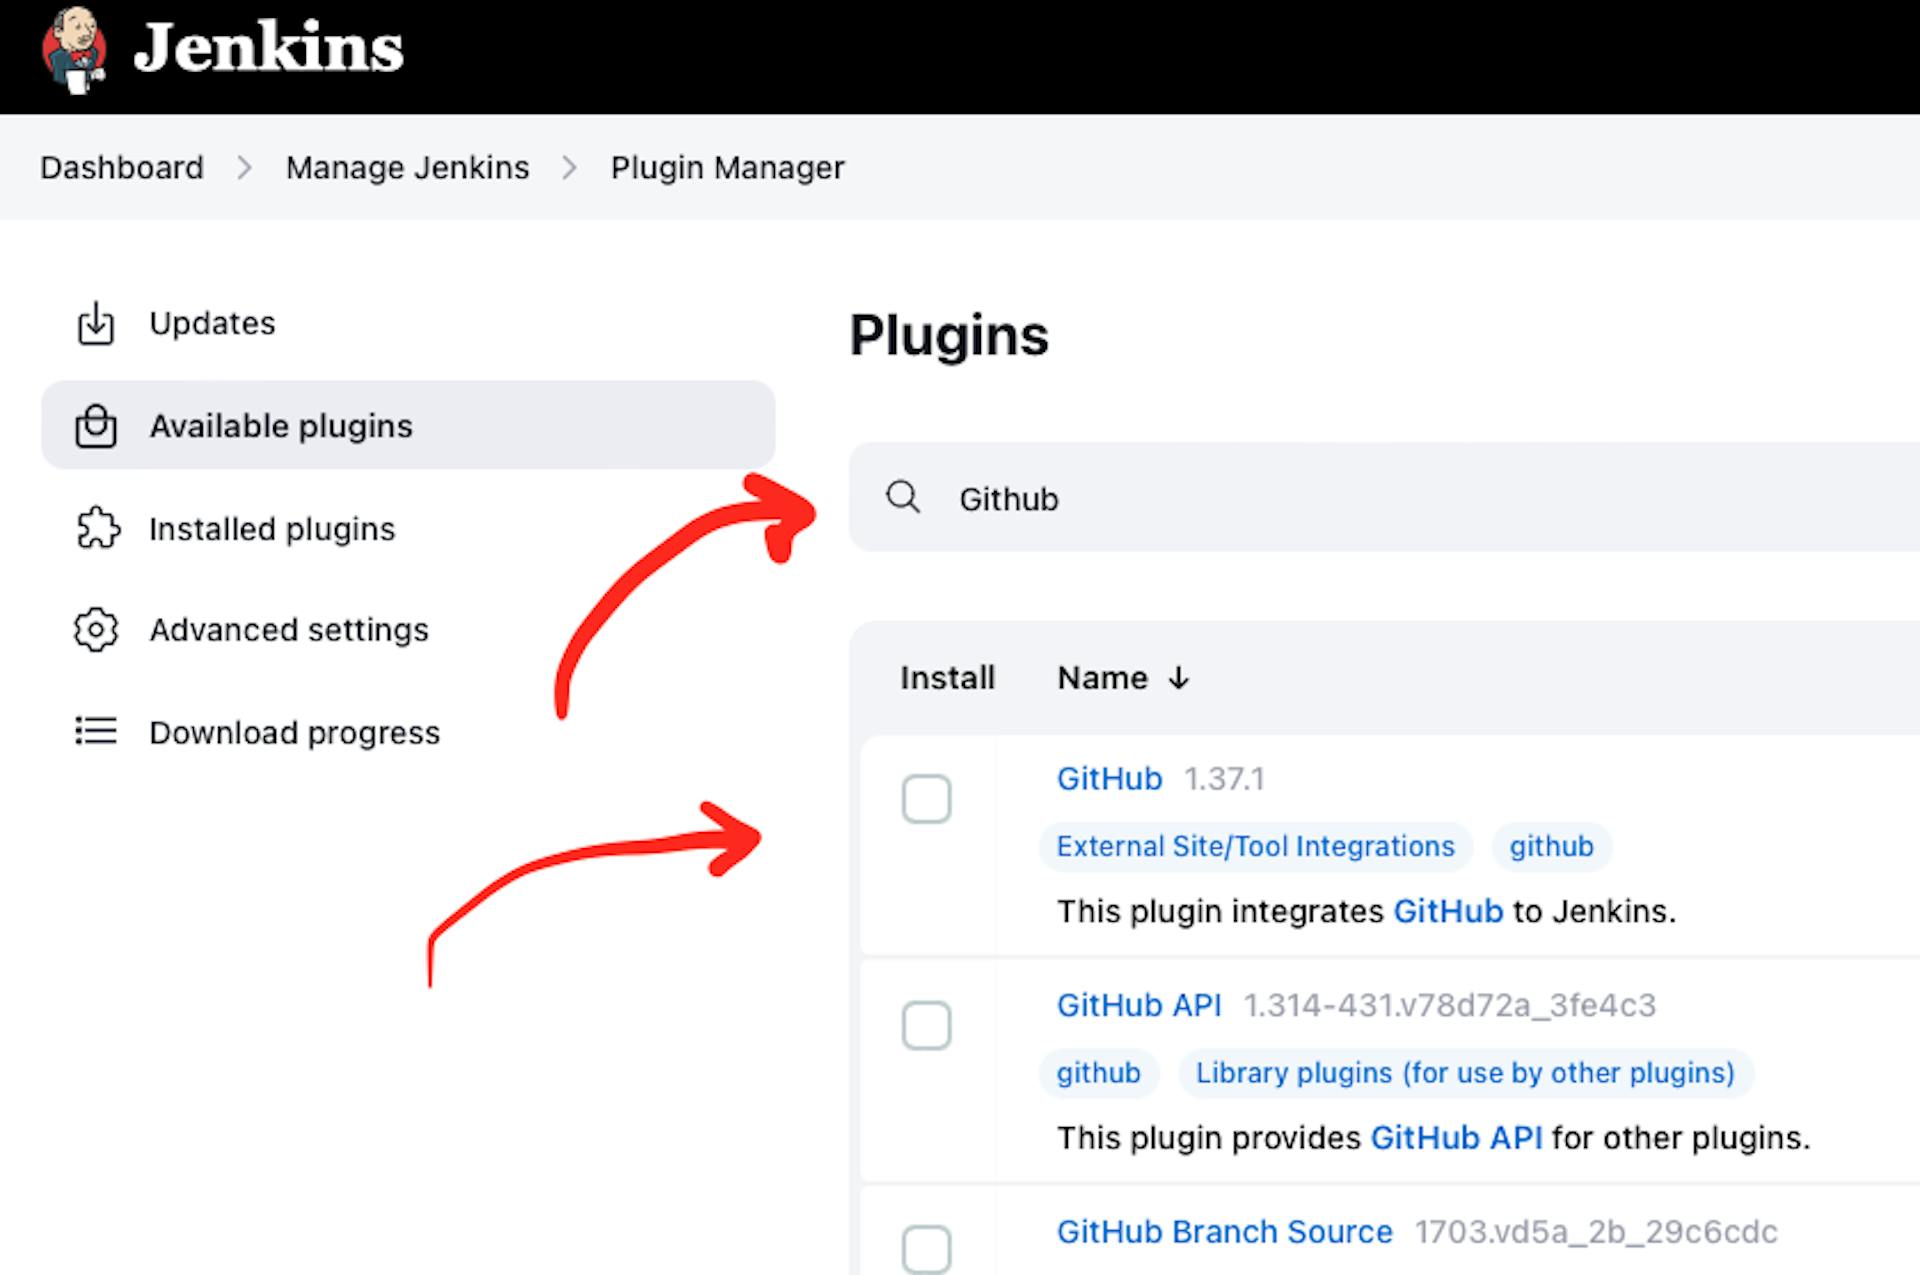 A captura de tela da página da web do Jenkins Plugin Manager com o ponteiro para o plugin "Github"